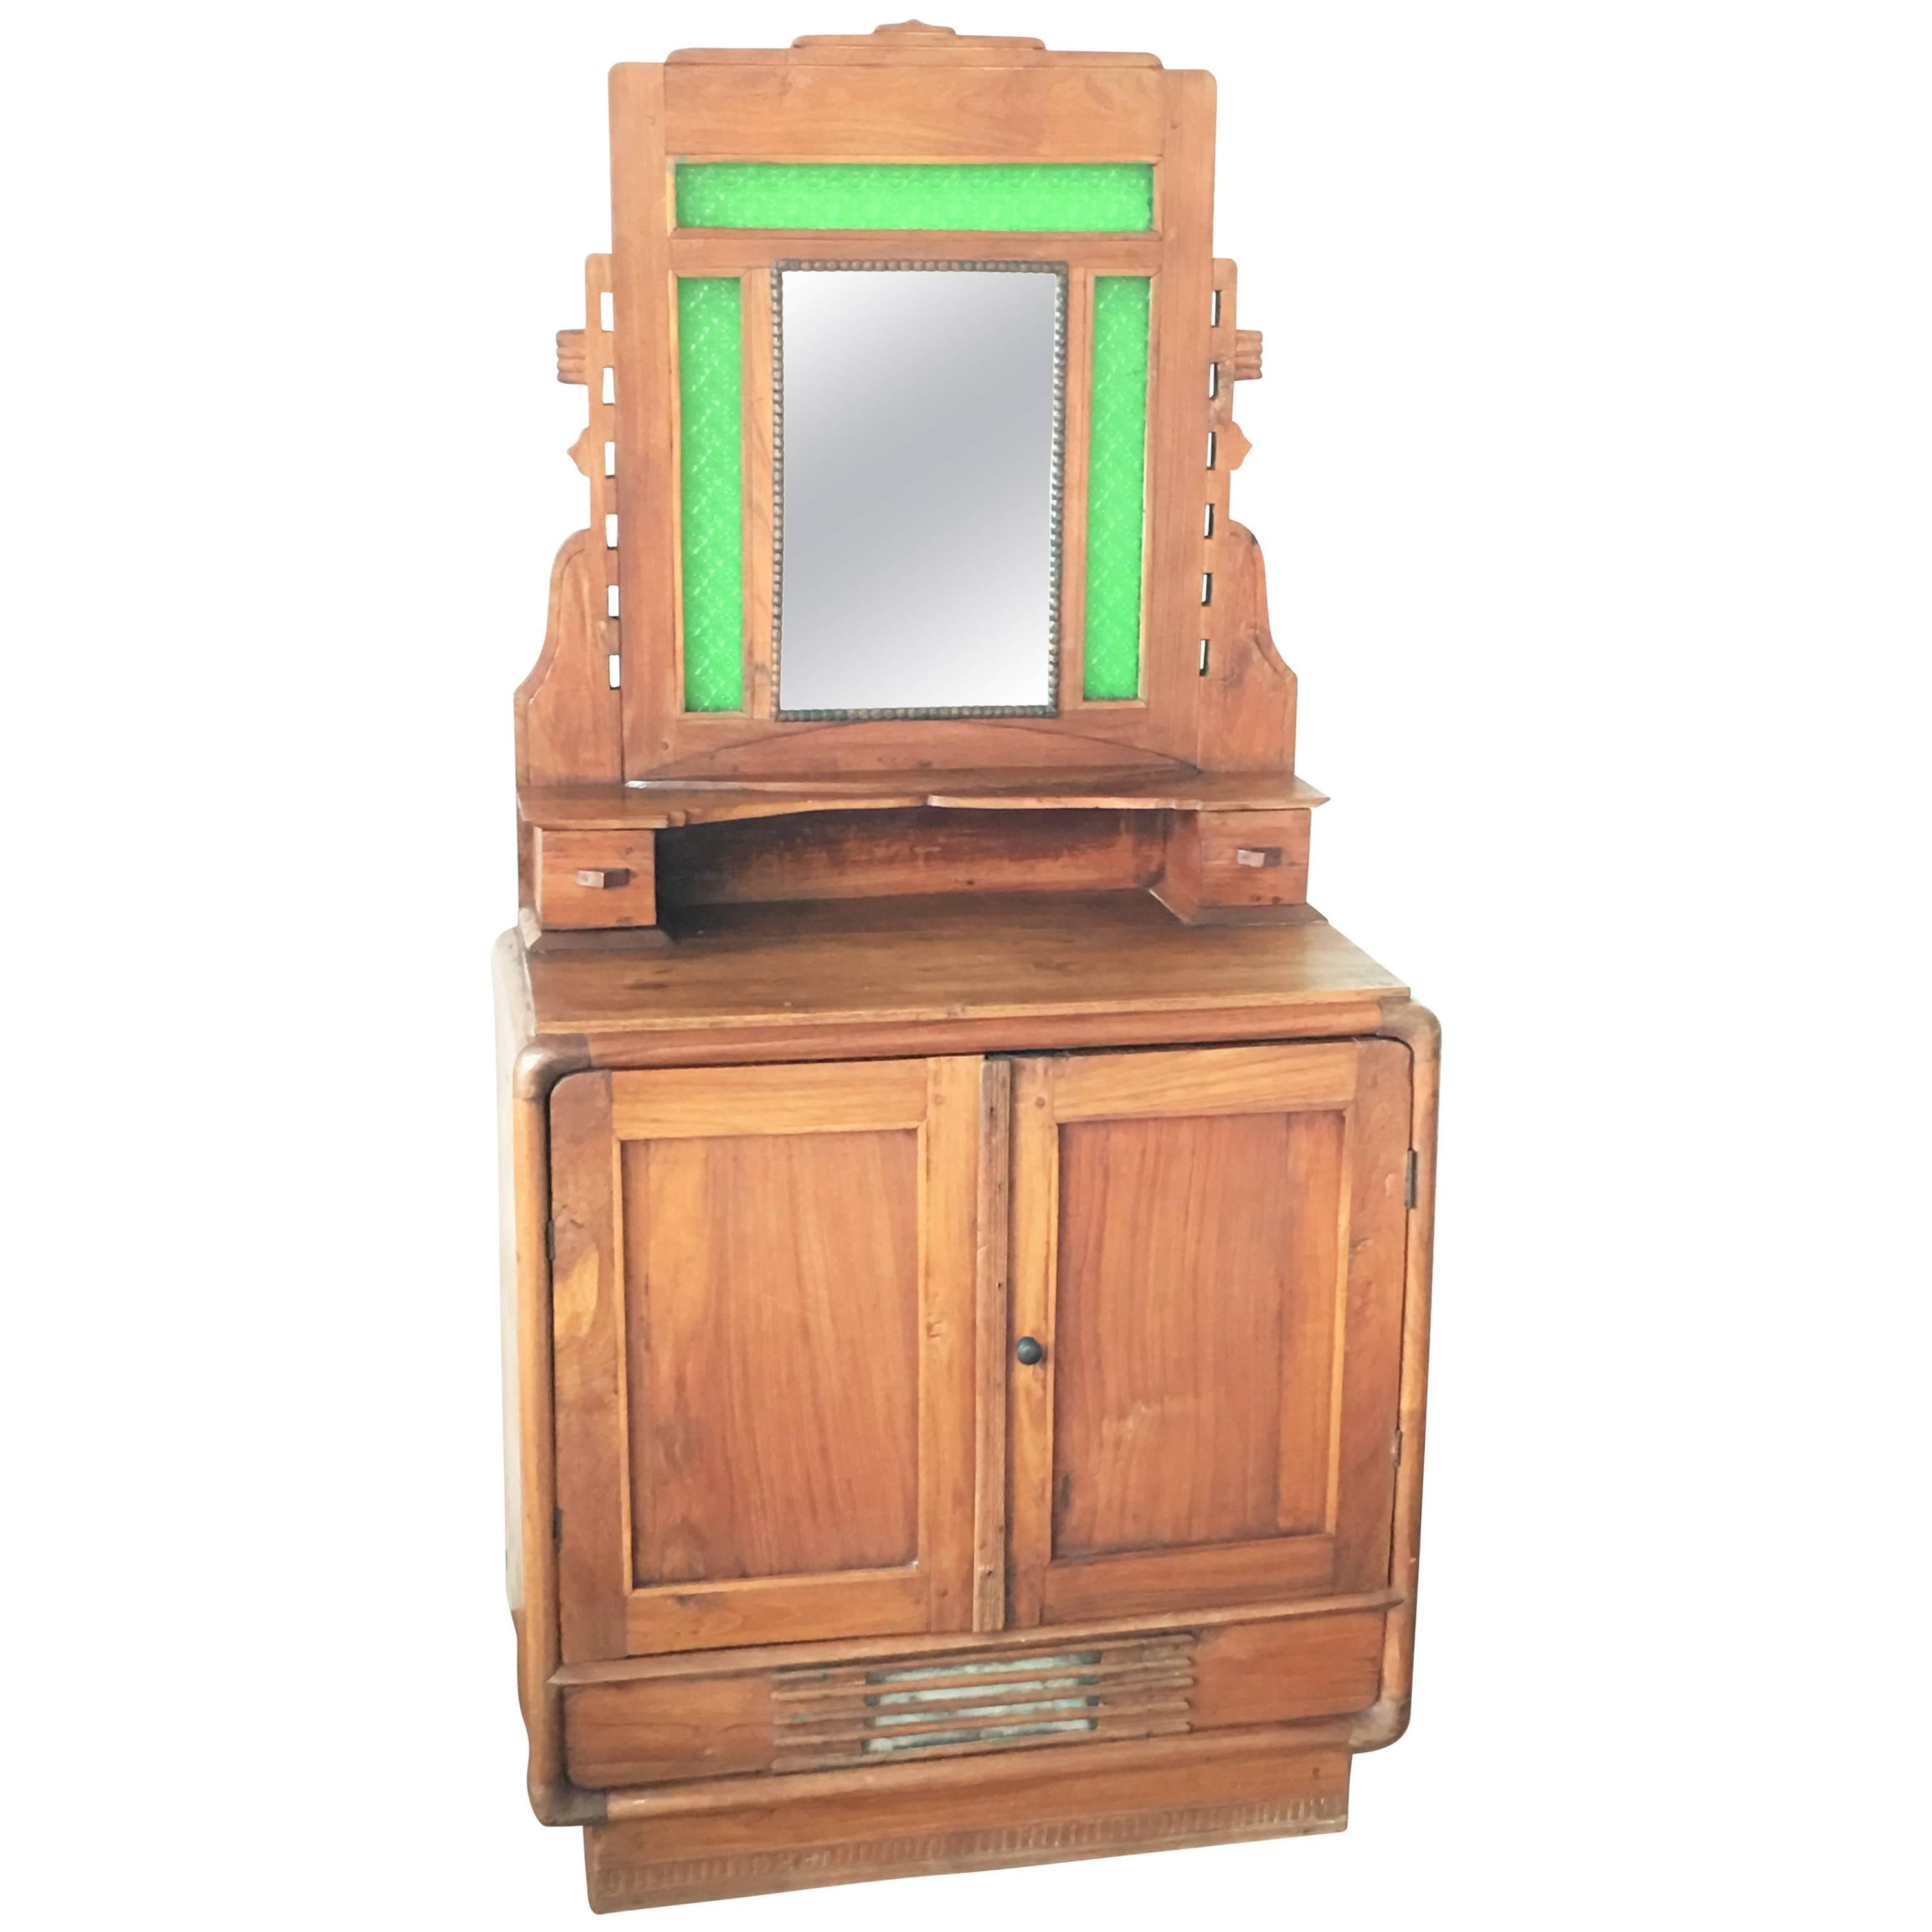 Sideboard aus Eichenholz, Buffet mit Spiegel und original grünem Glas